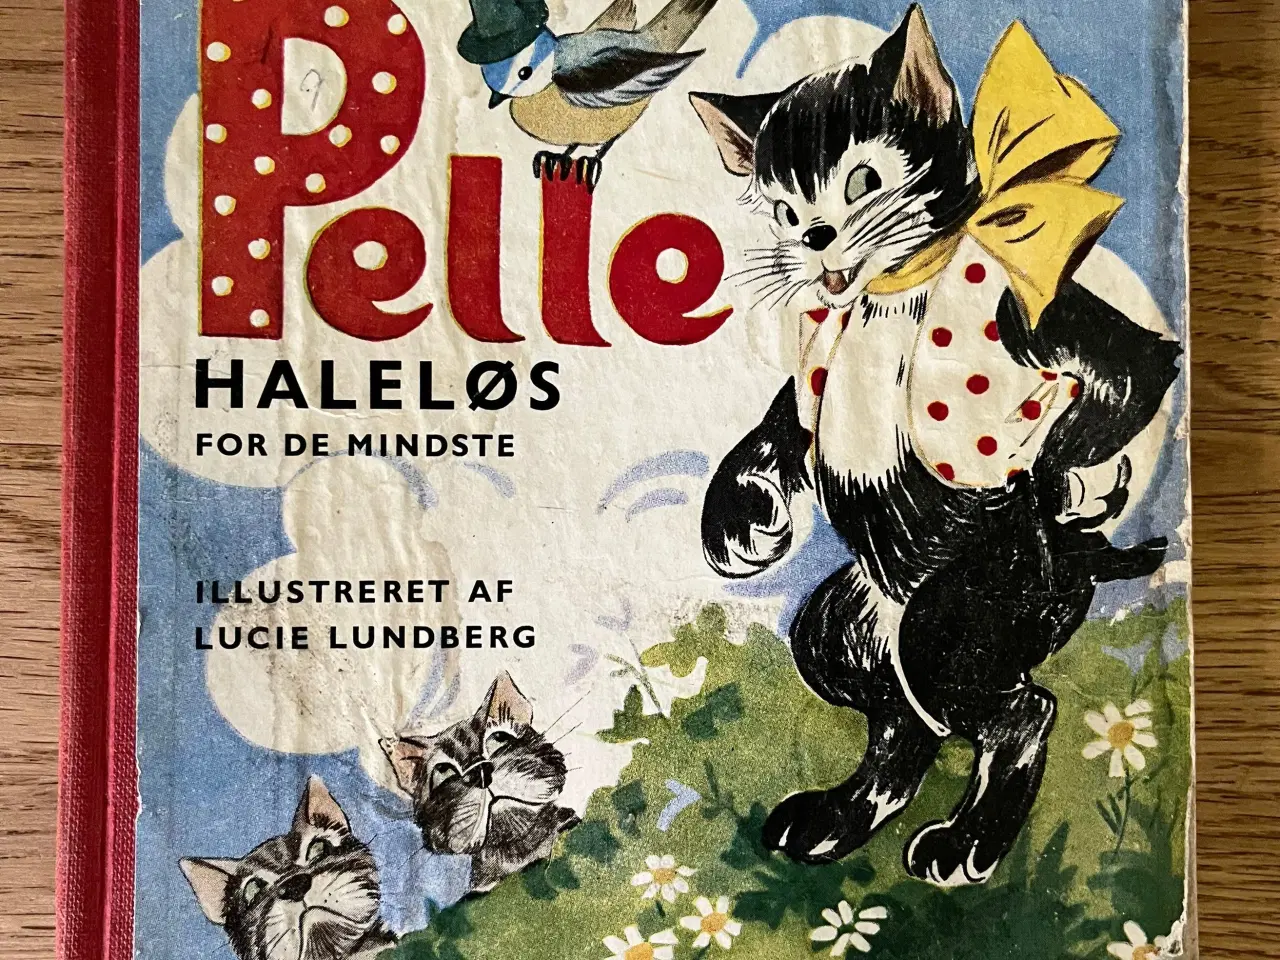 Billede 2 - Tre gamle Pelle Haleløs bøger